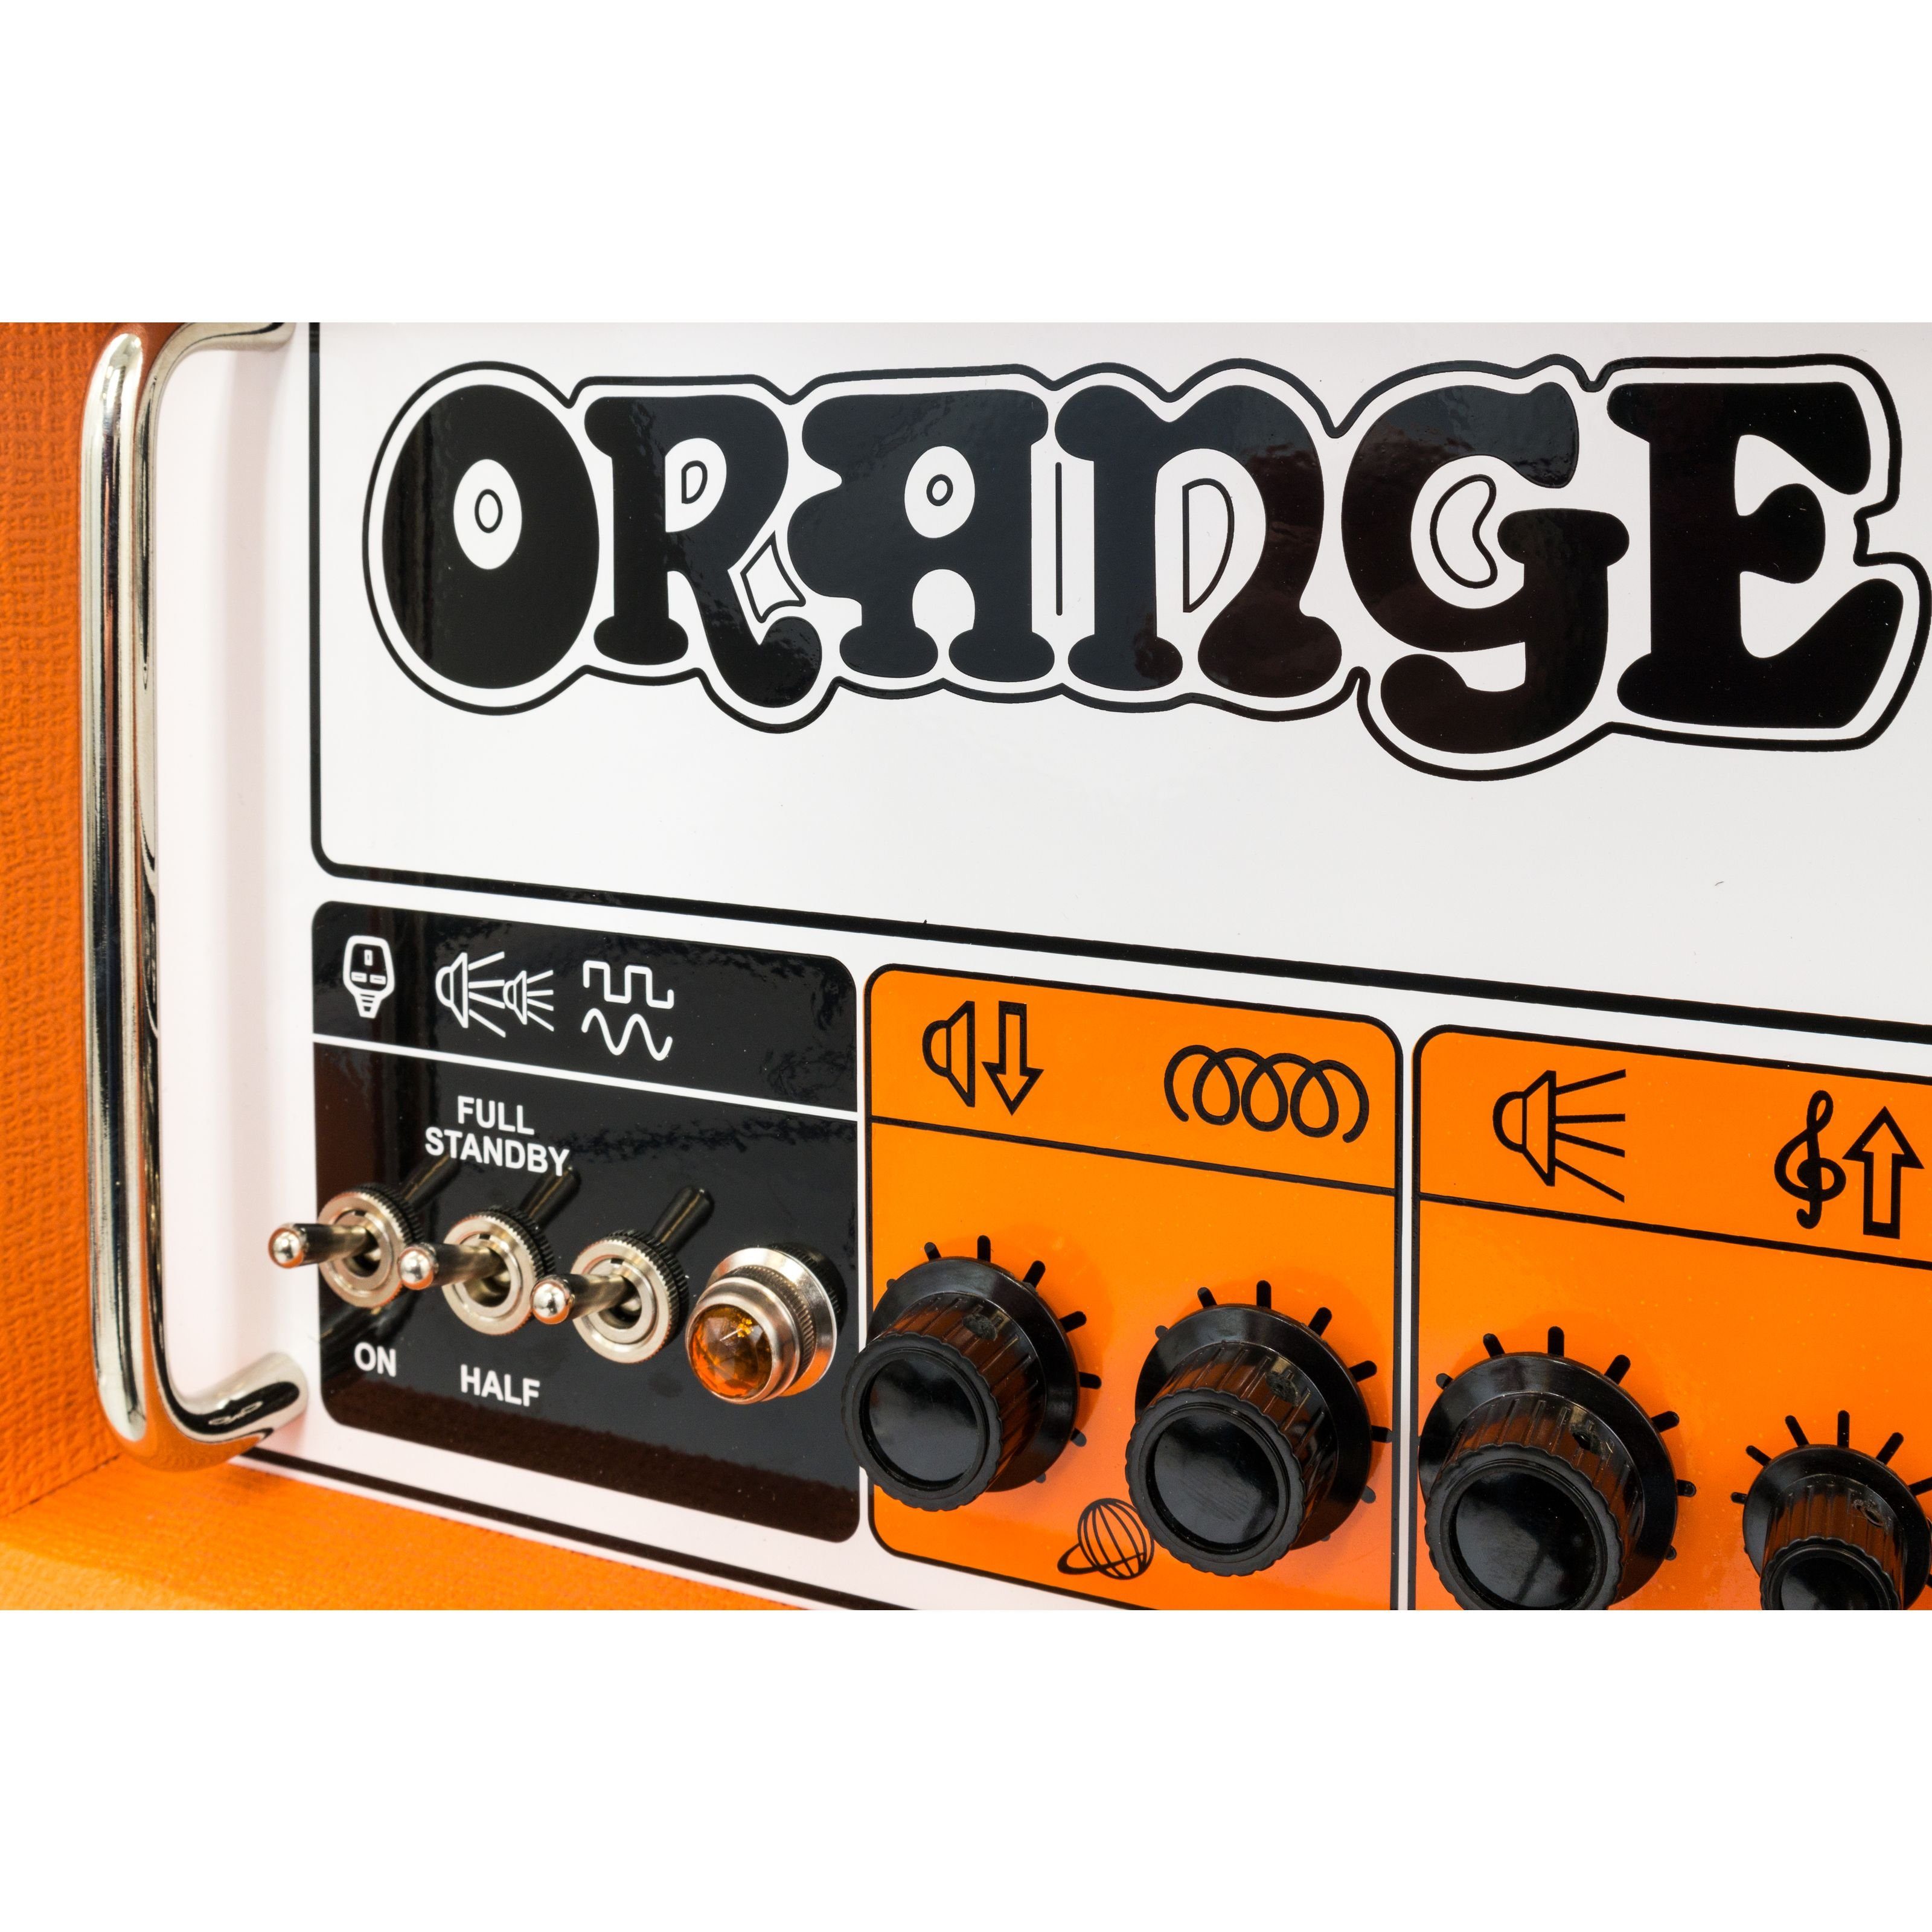 Orange Orange Topteil E-Gitarre) - Röhren 50H für (Rockerverb Verstärker MKIII Head